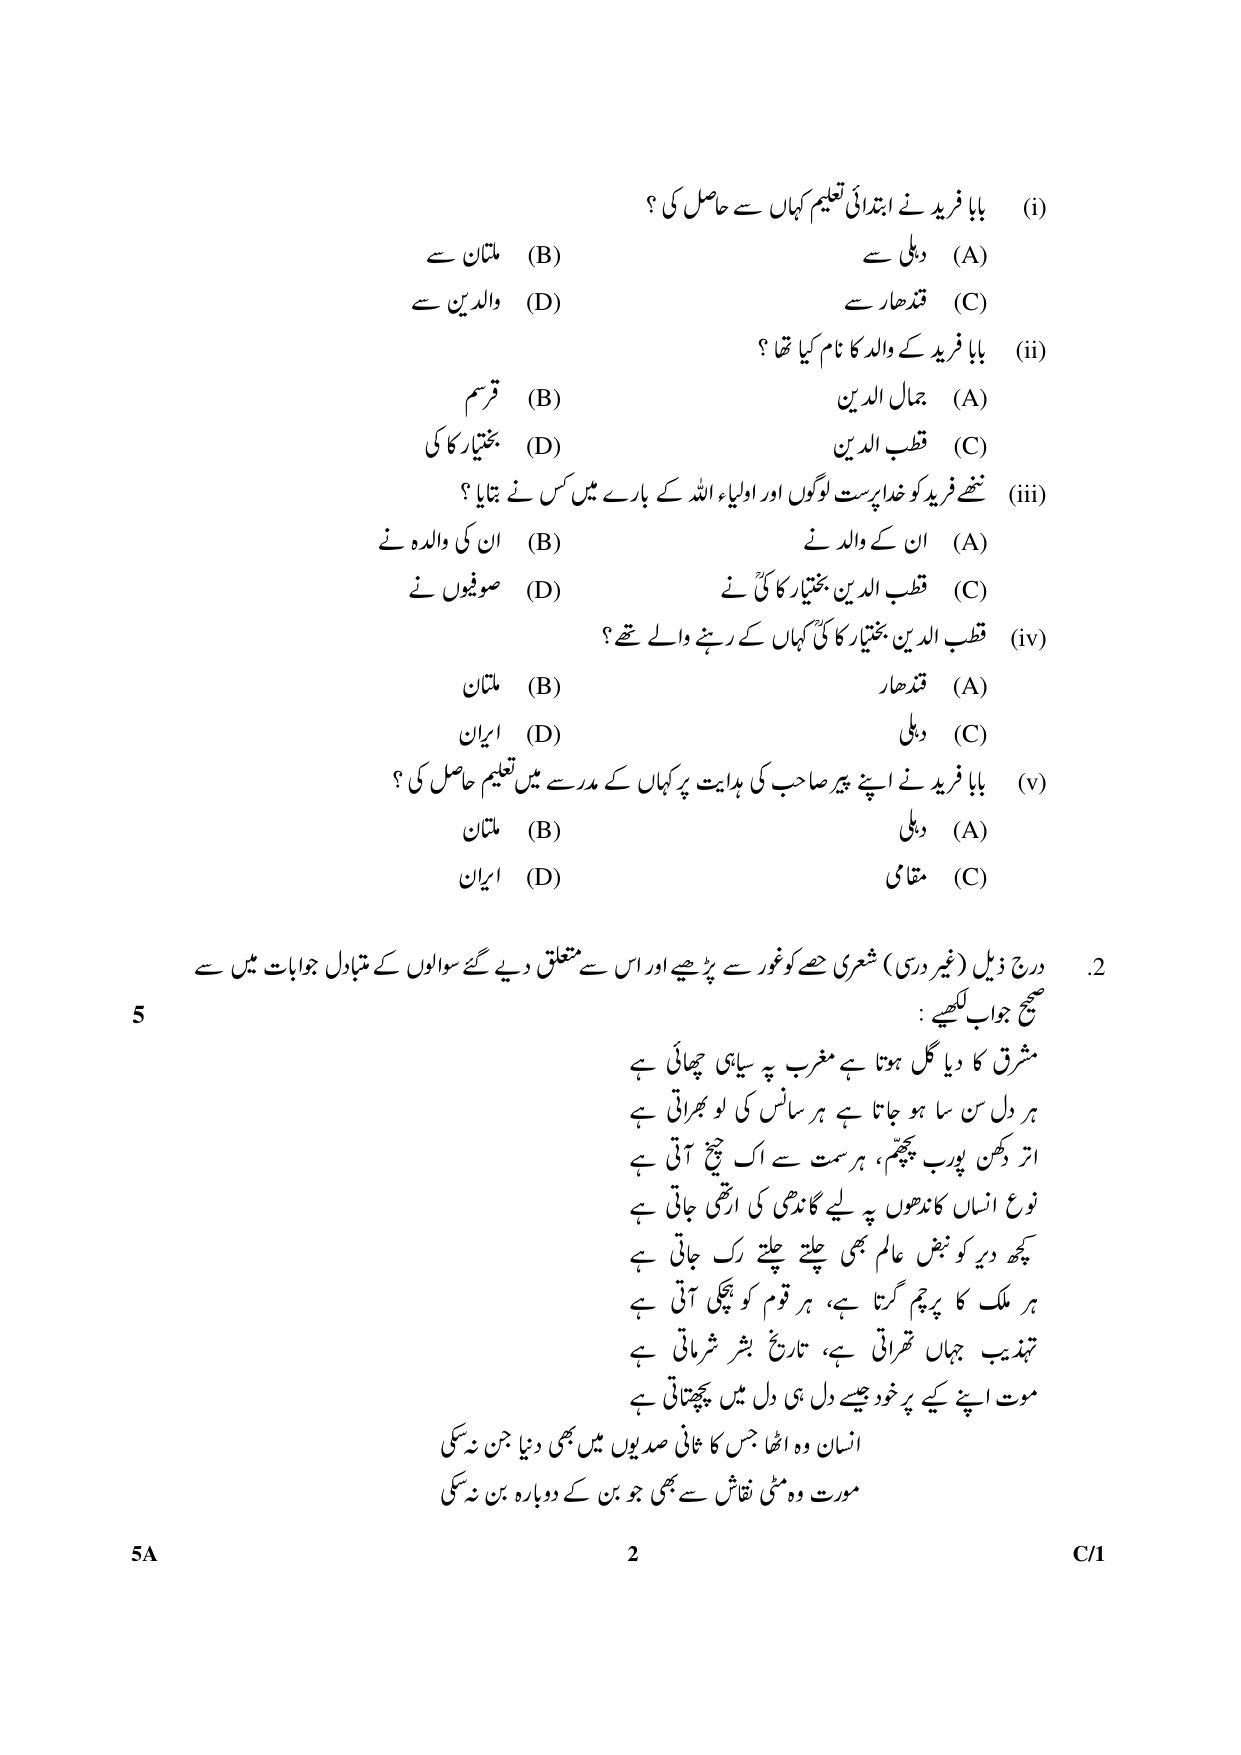 CBSE Class 10 5A Urdu (Course A) 2018 Compartment Question Paper - Page 2